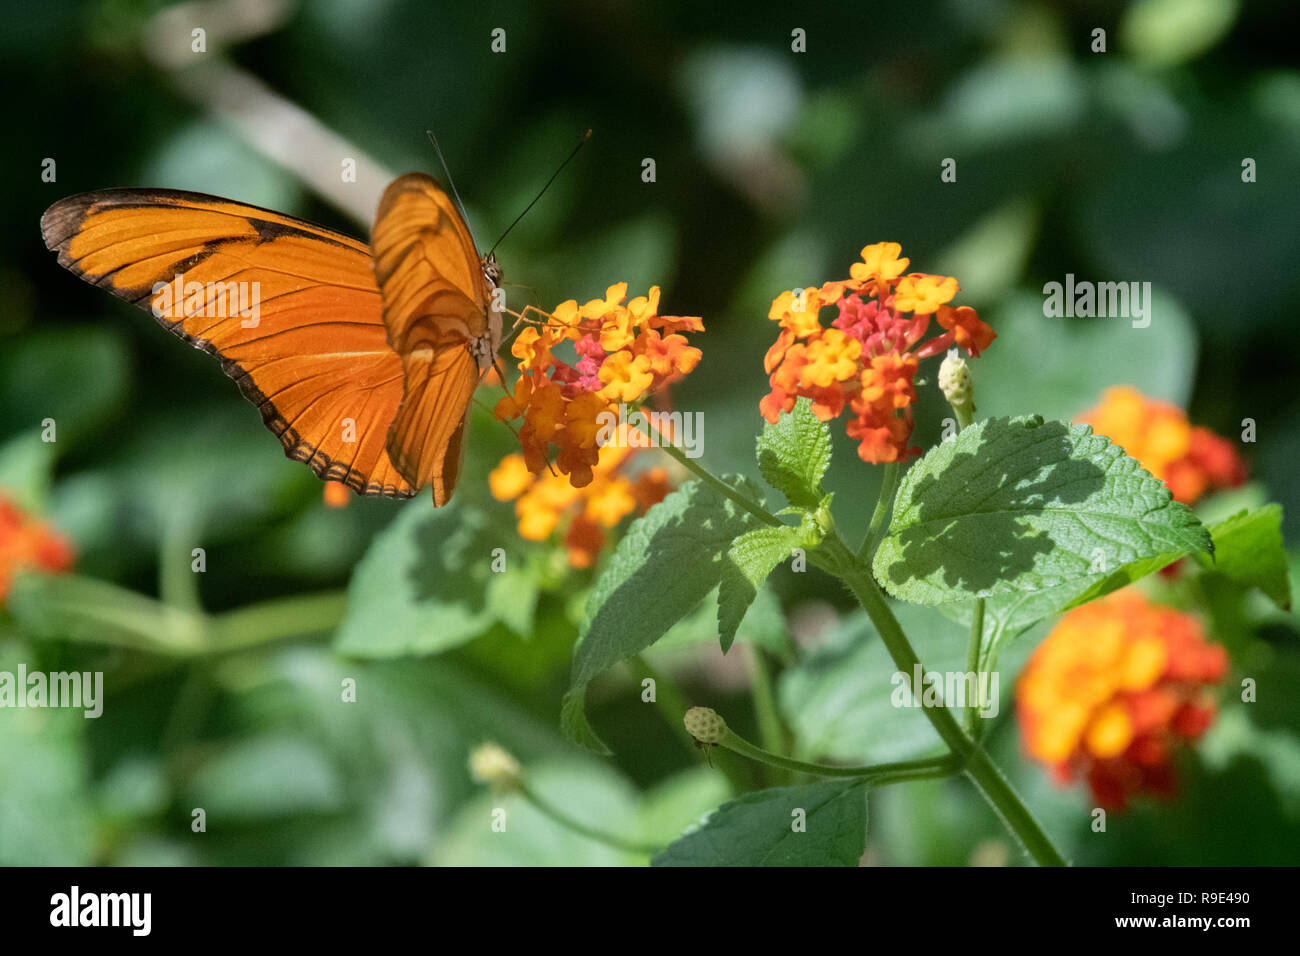 Fackel butterfly - Julia butterfly - Dryas iulia butterfly - a Fackel butterfly rests on orange flowers in a butterfly exhibit in Aruba Stock Photo